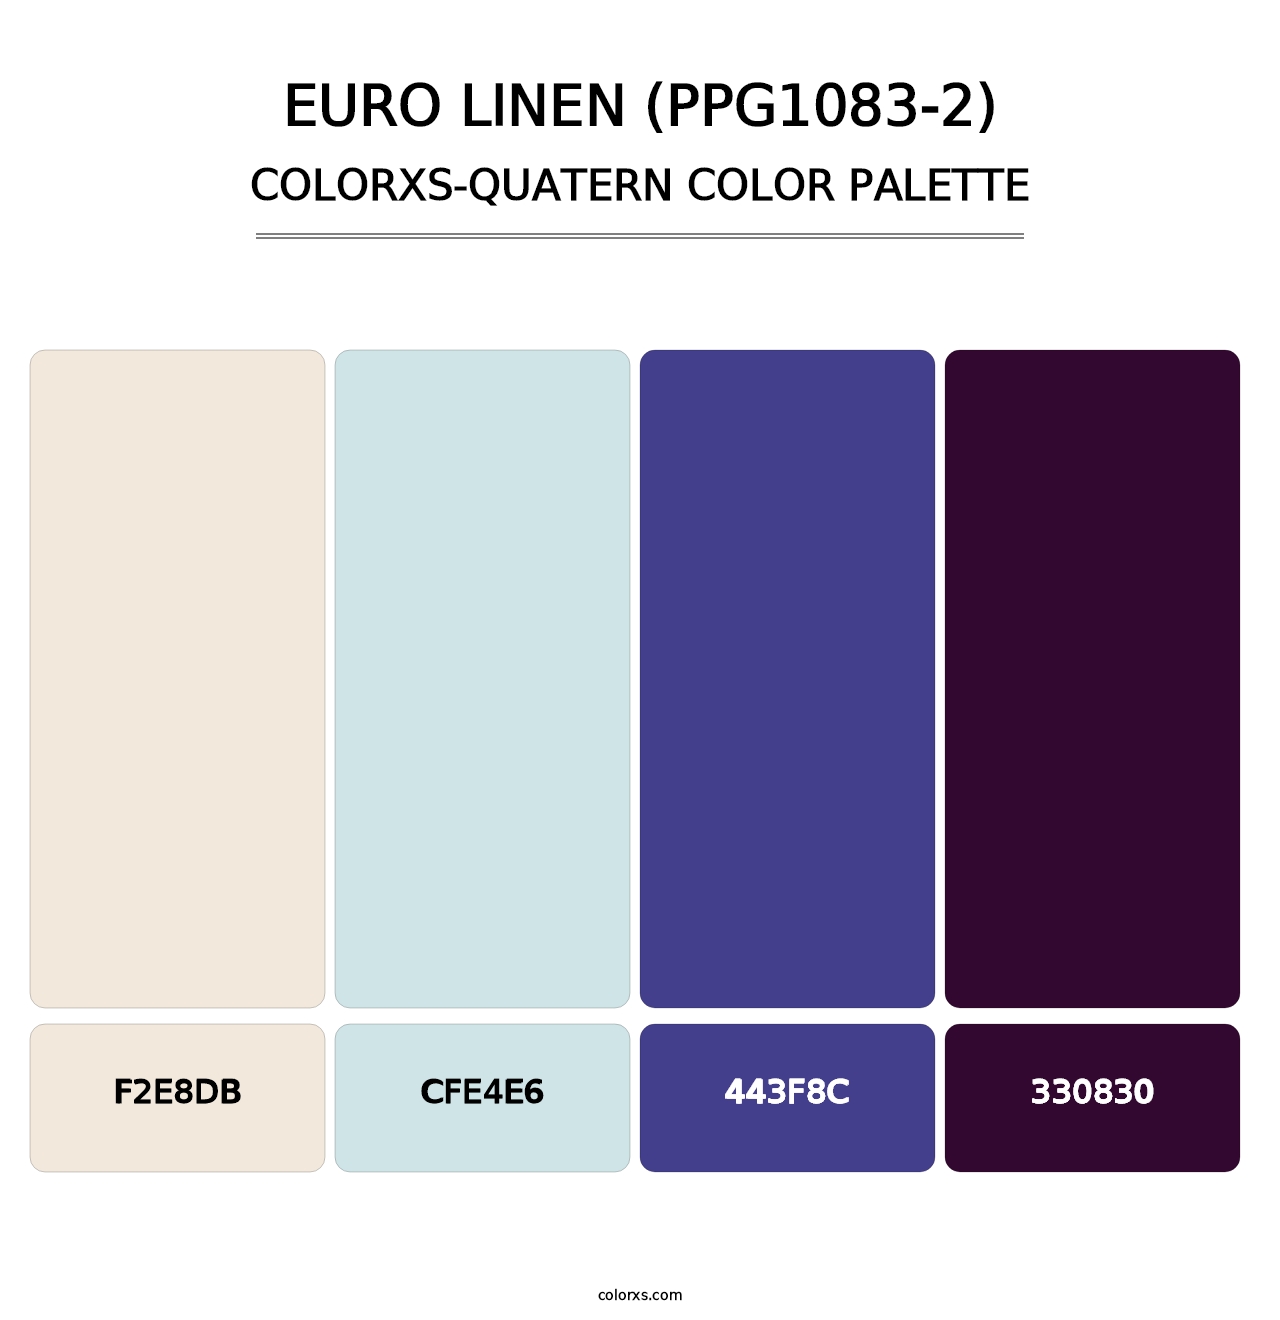 Euro Linen (PPG1083-2) - Colorxs Quatern Palette